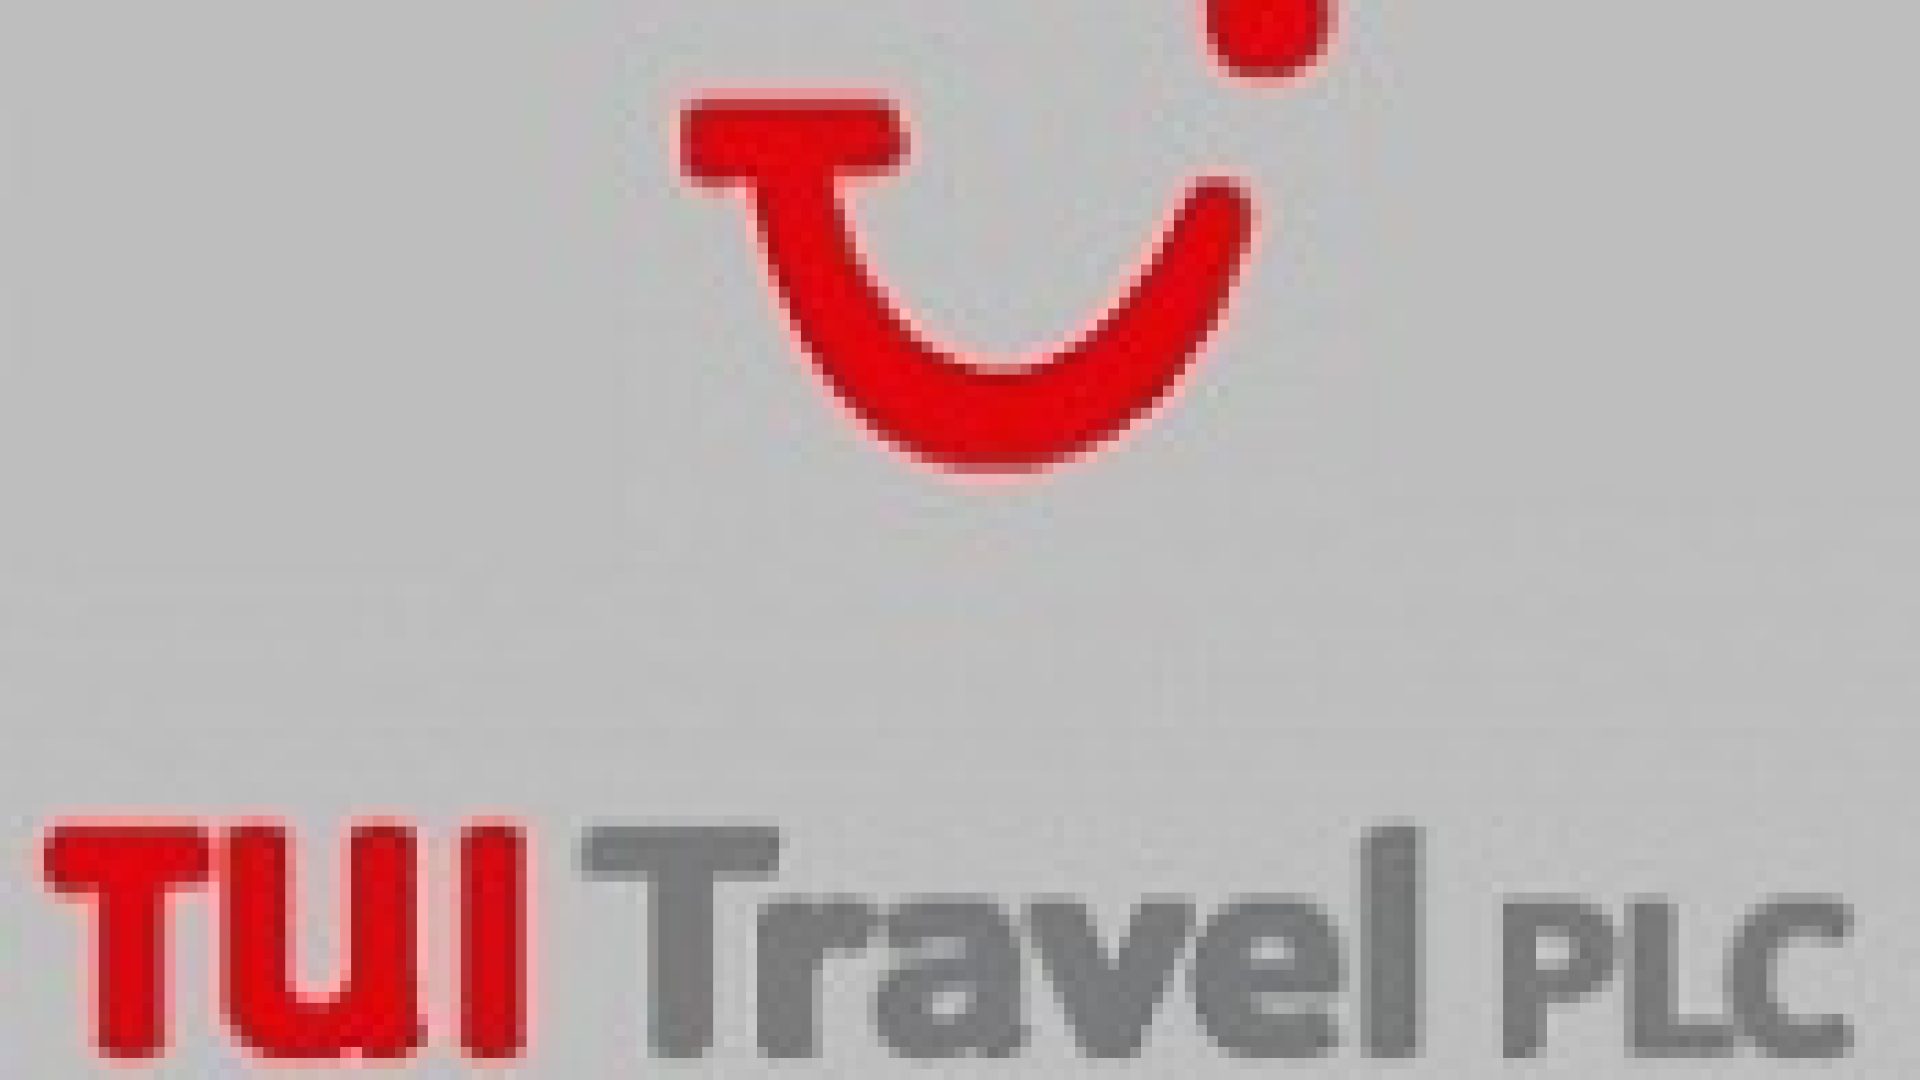 349-cover-tui_travel_plc